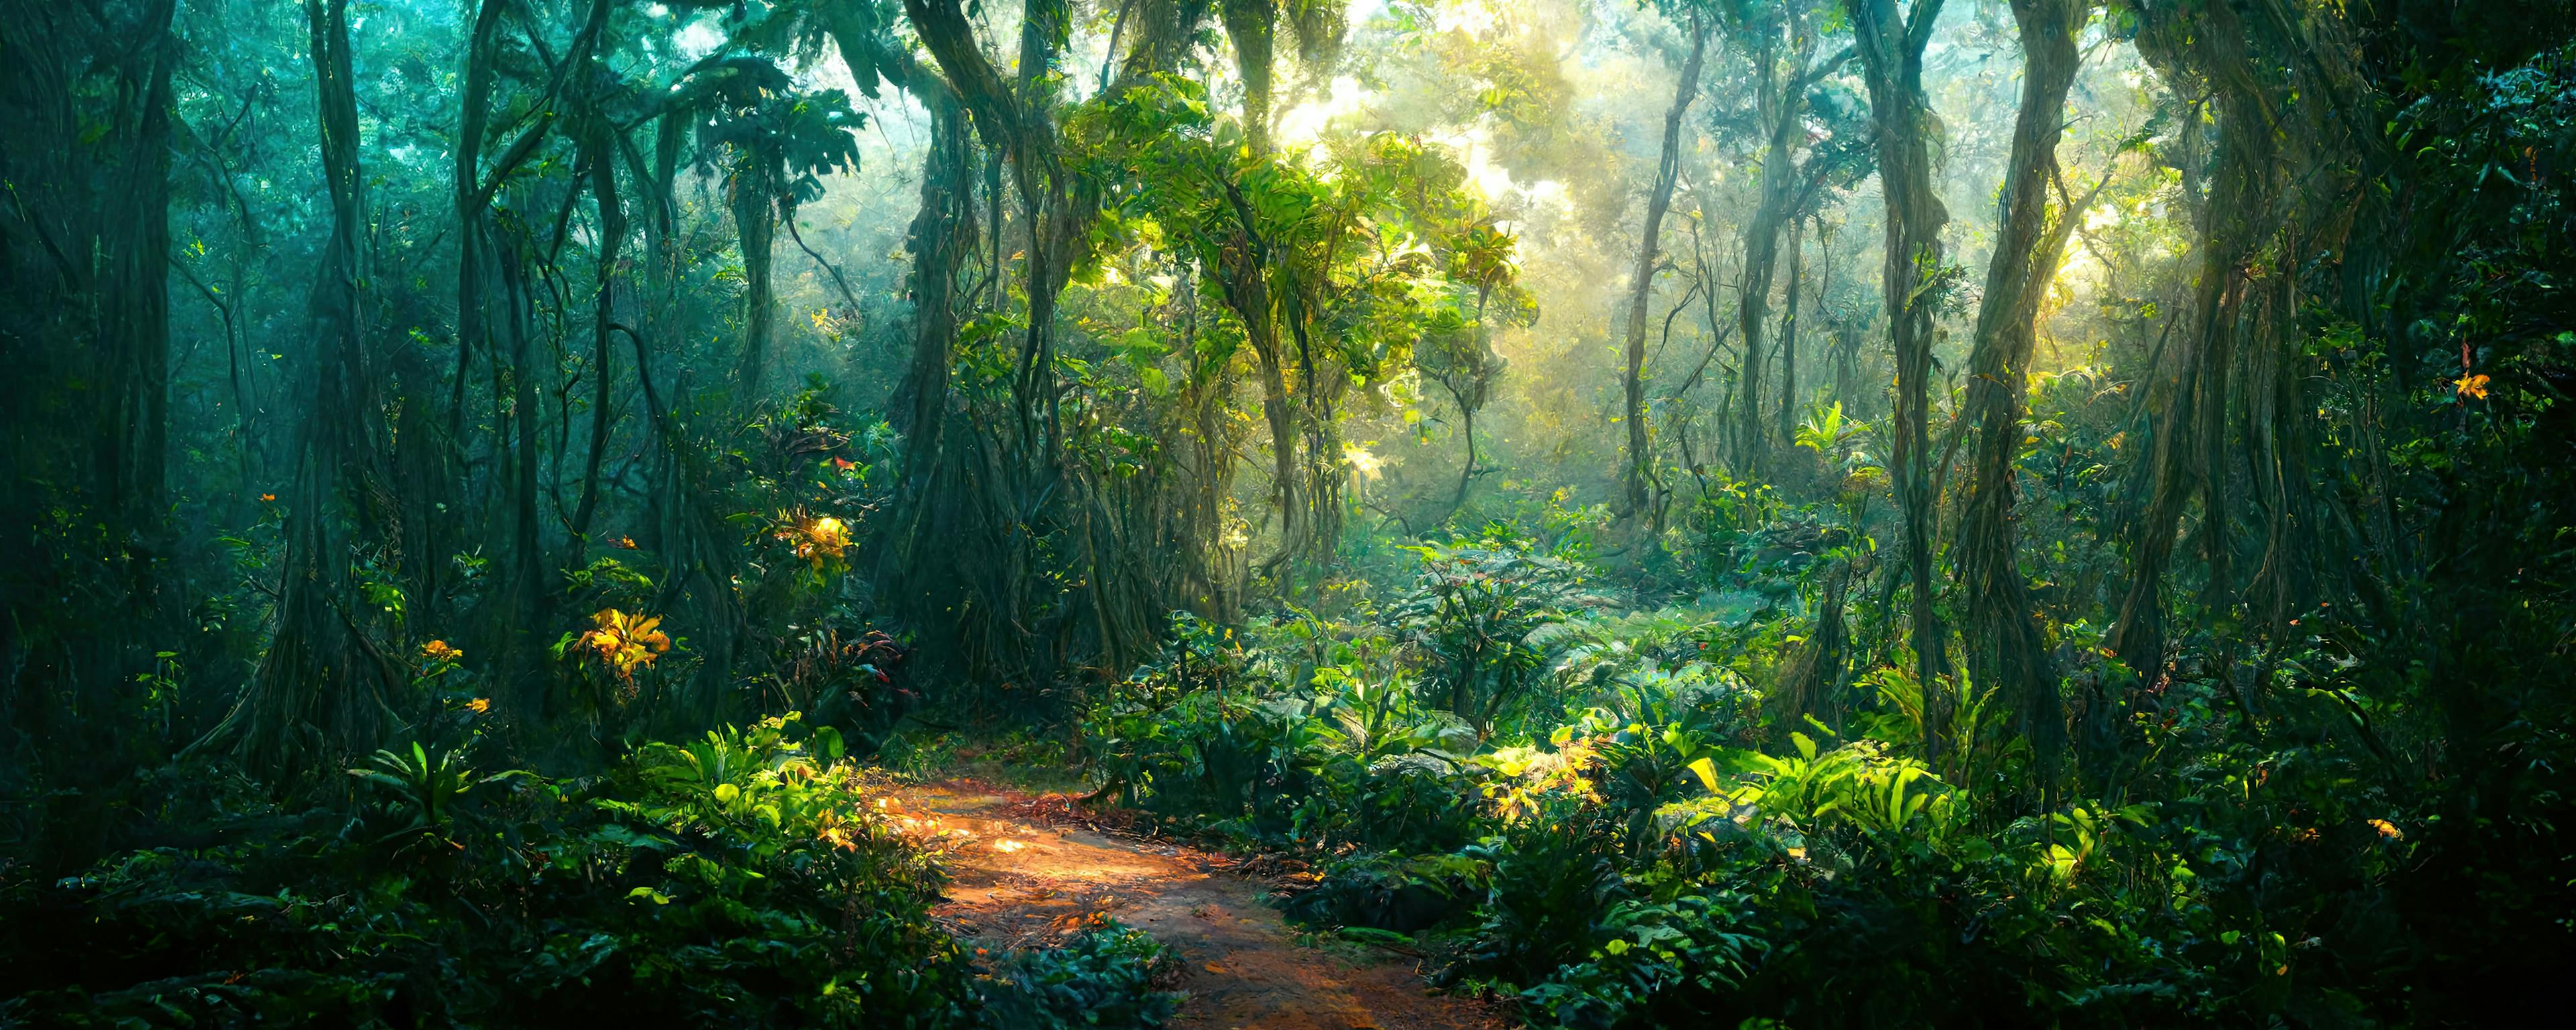 Enchanted tropical rain forest | Image Credit: © Ricardo Nóbrega - stock.adobe.com